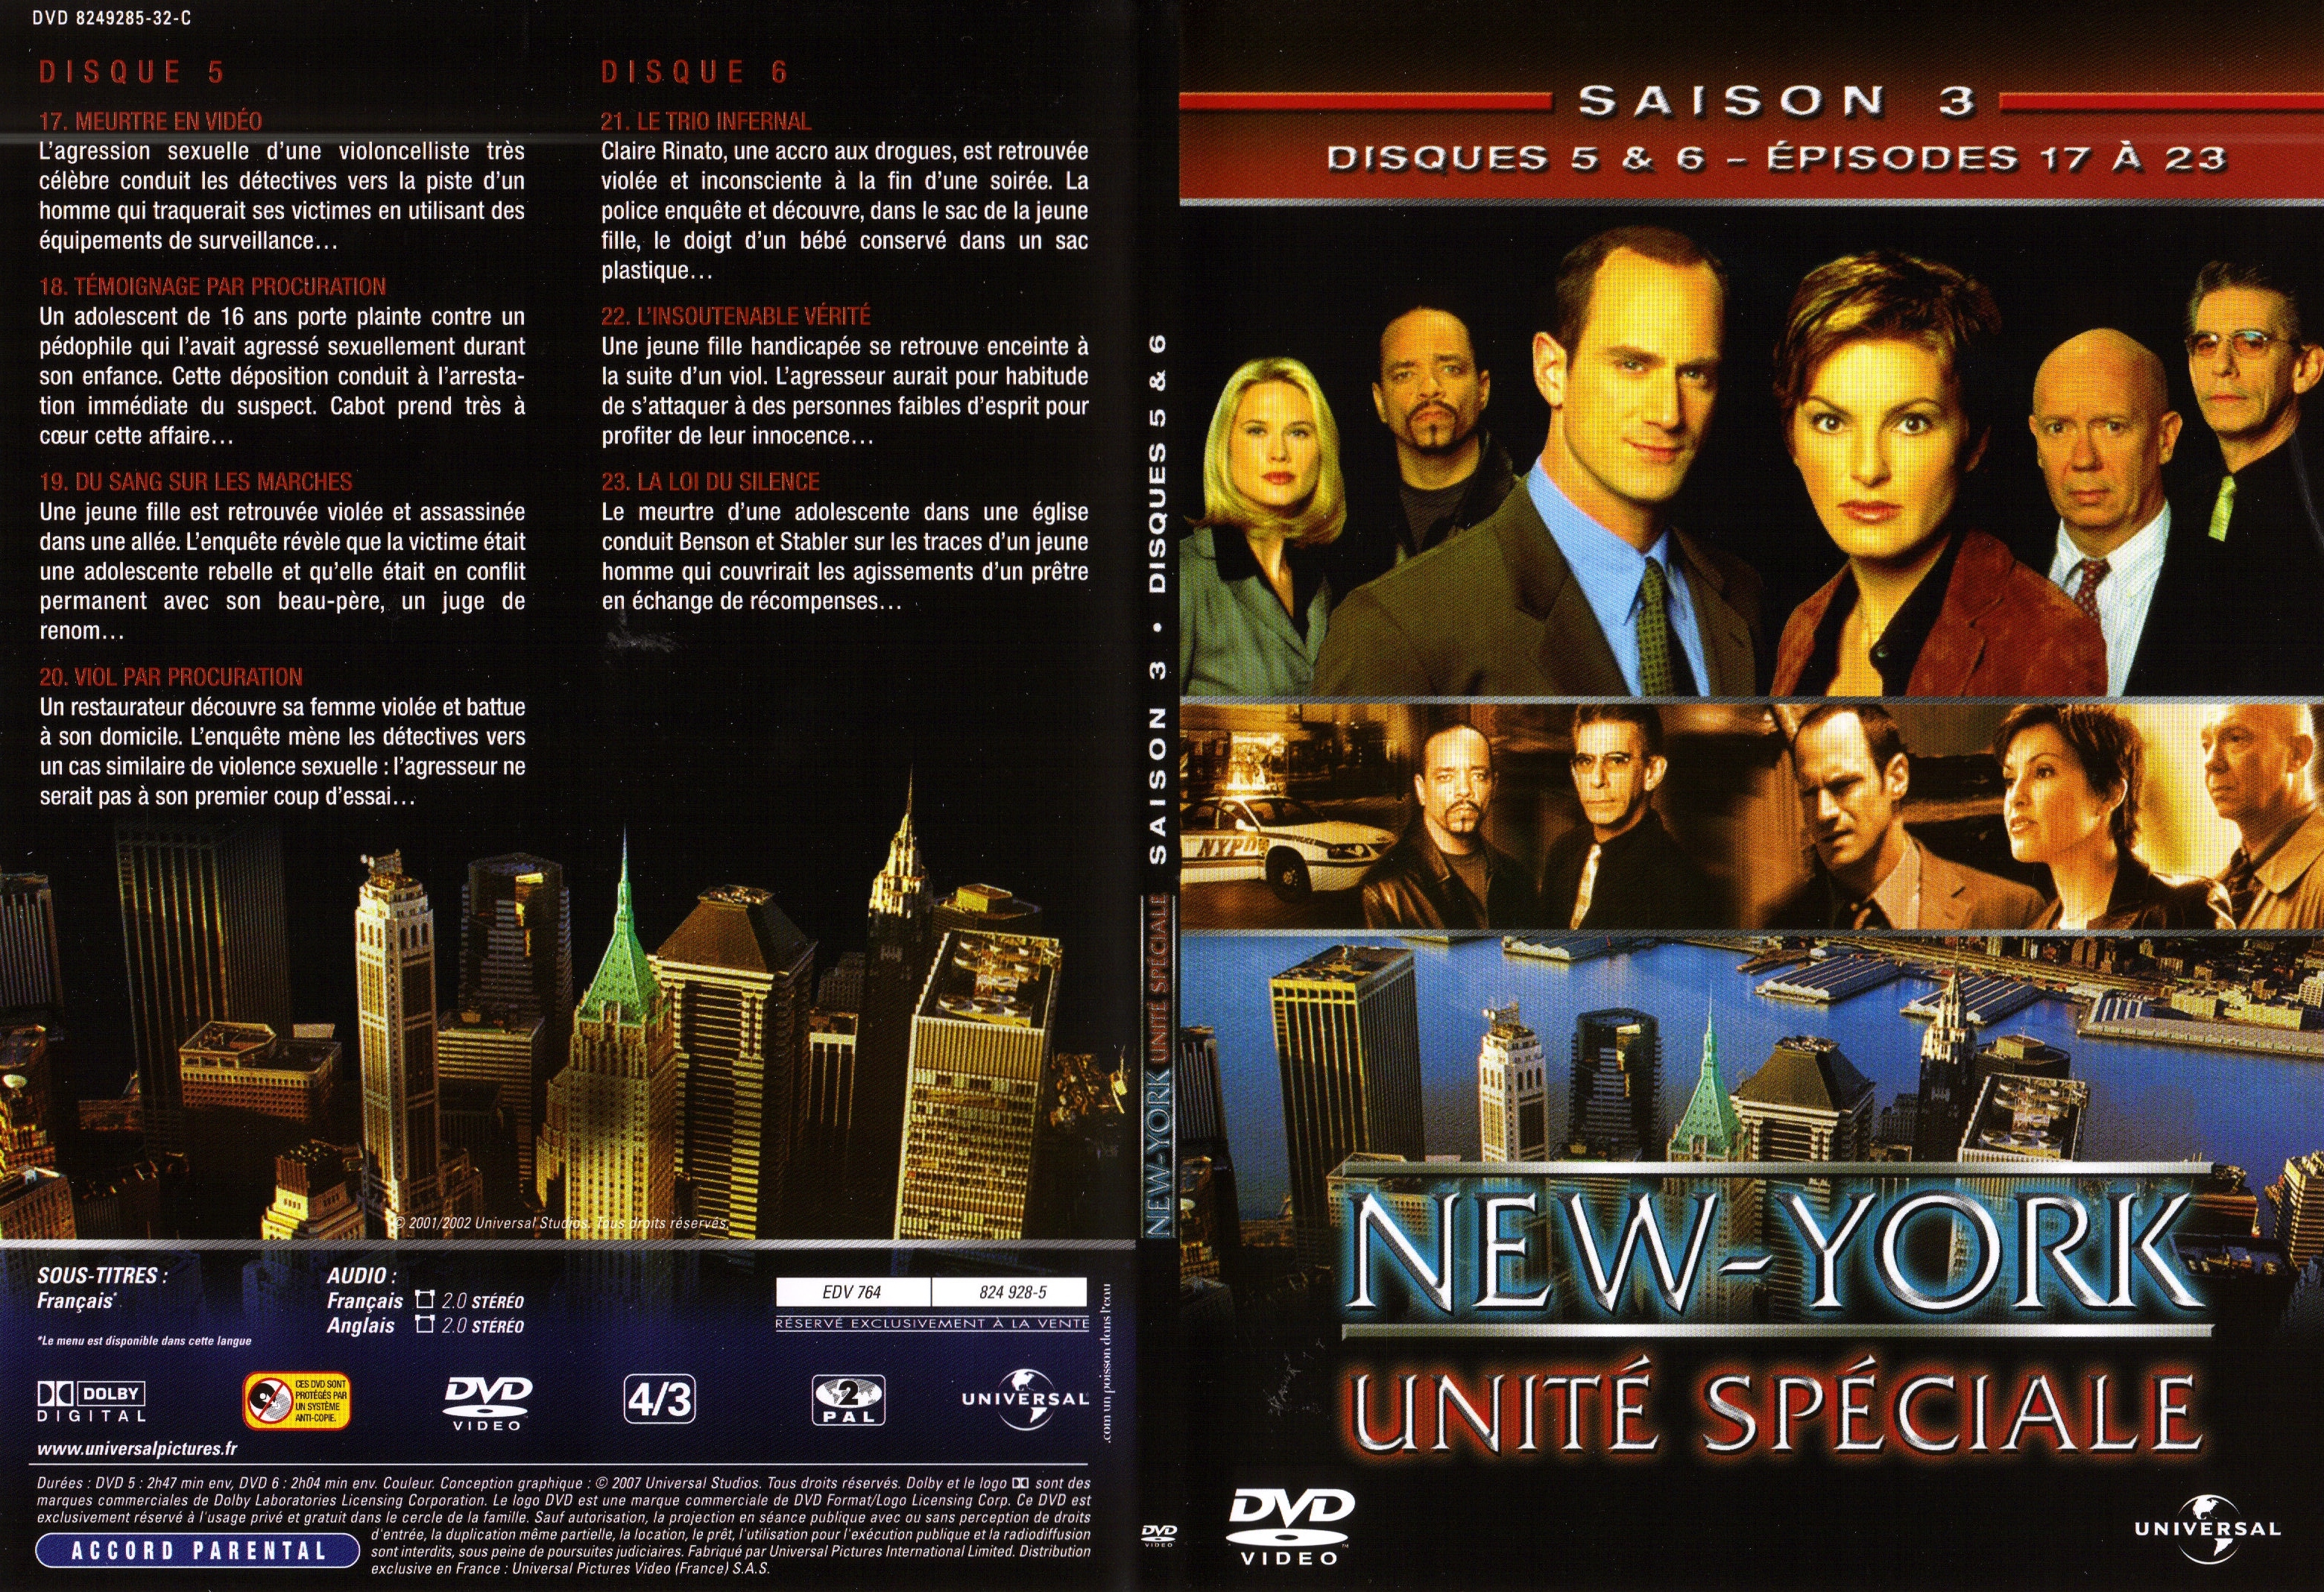 Jaquette DVD New York unit spciale saison 3 DVD 3